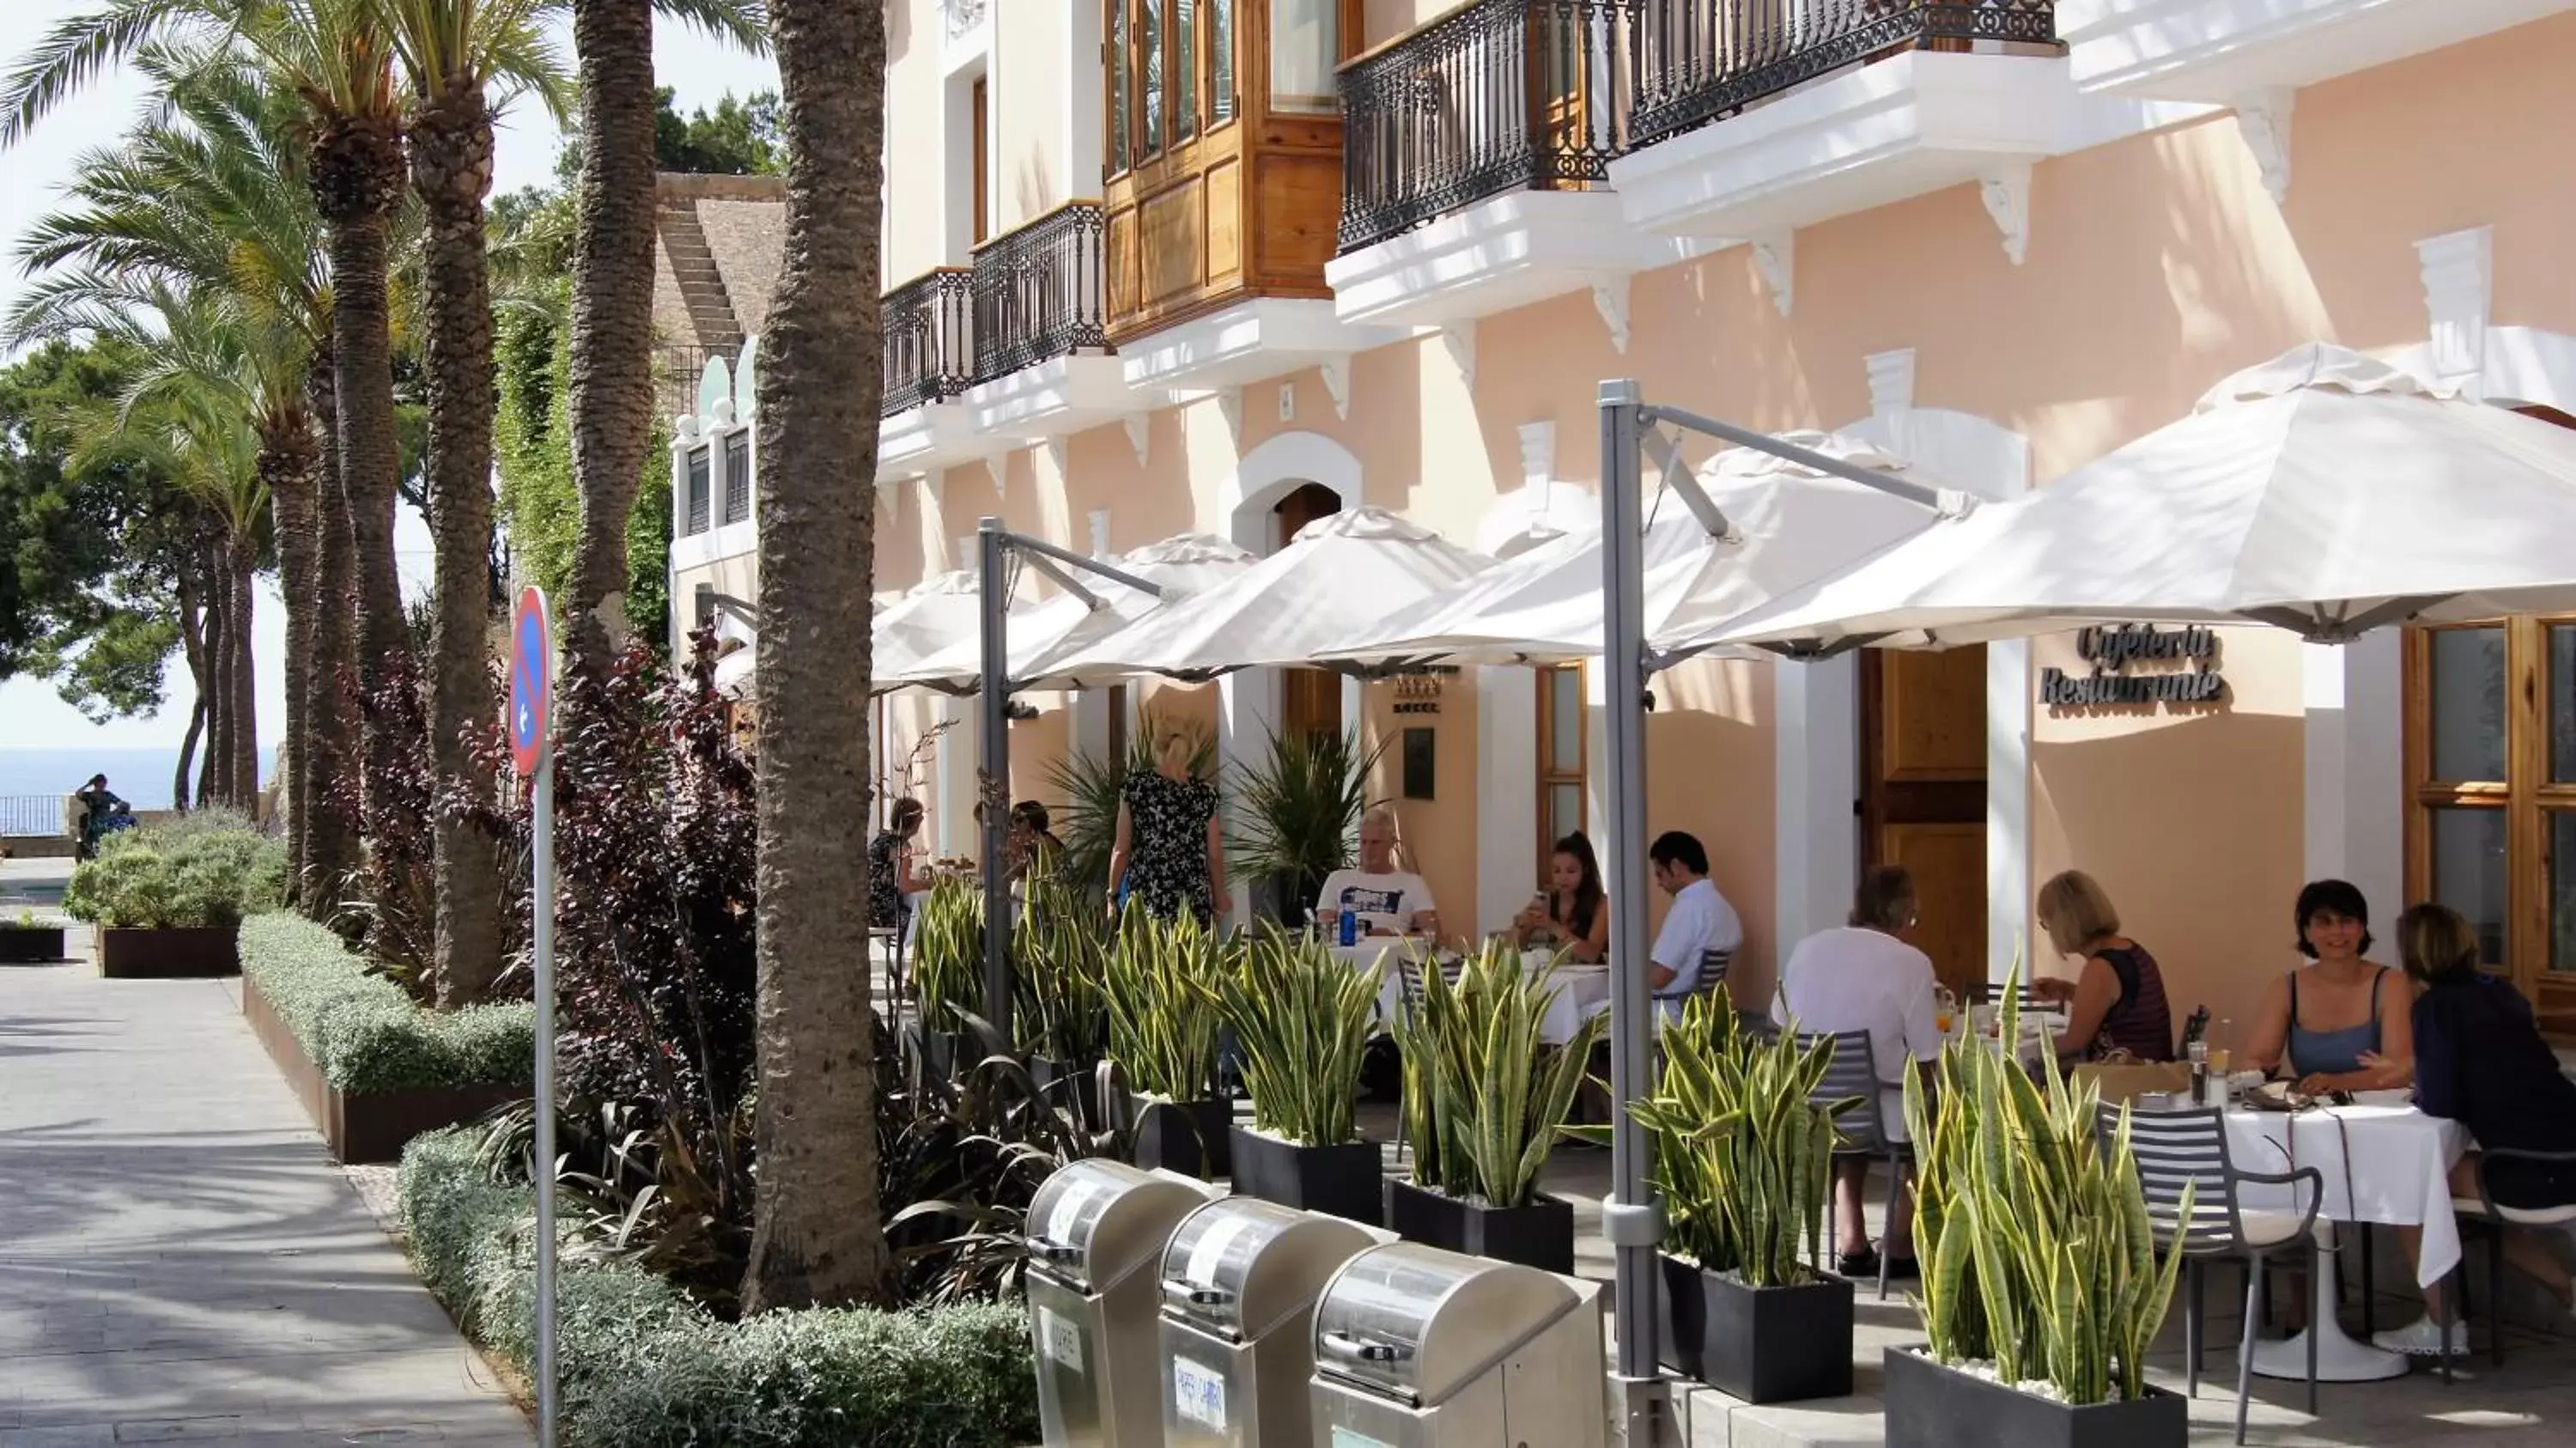 Street view, Restaurant/Places to Eat in Mirador de Dalt Vila-Relais & Chateaux